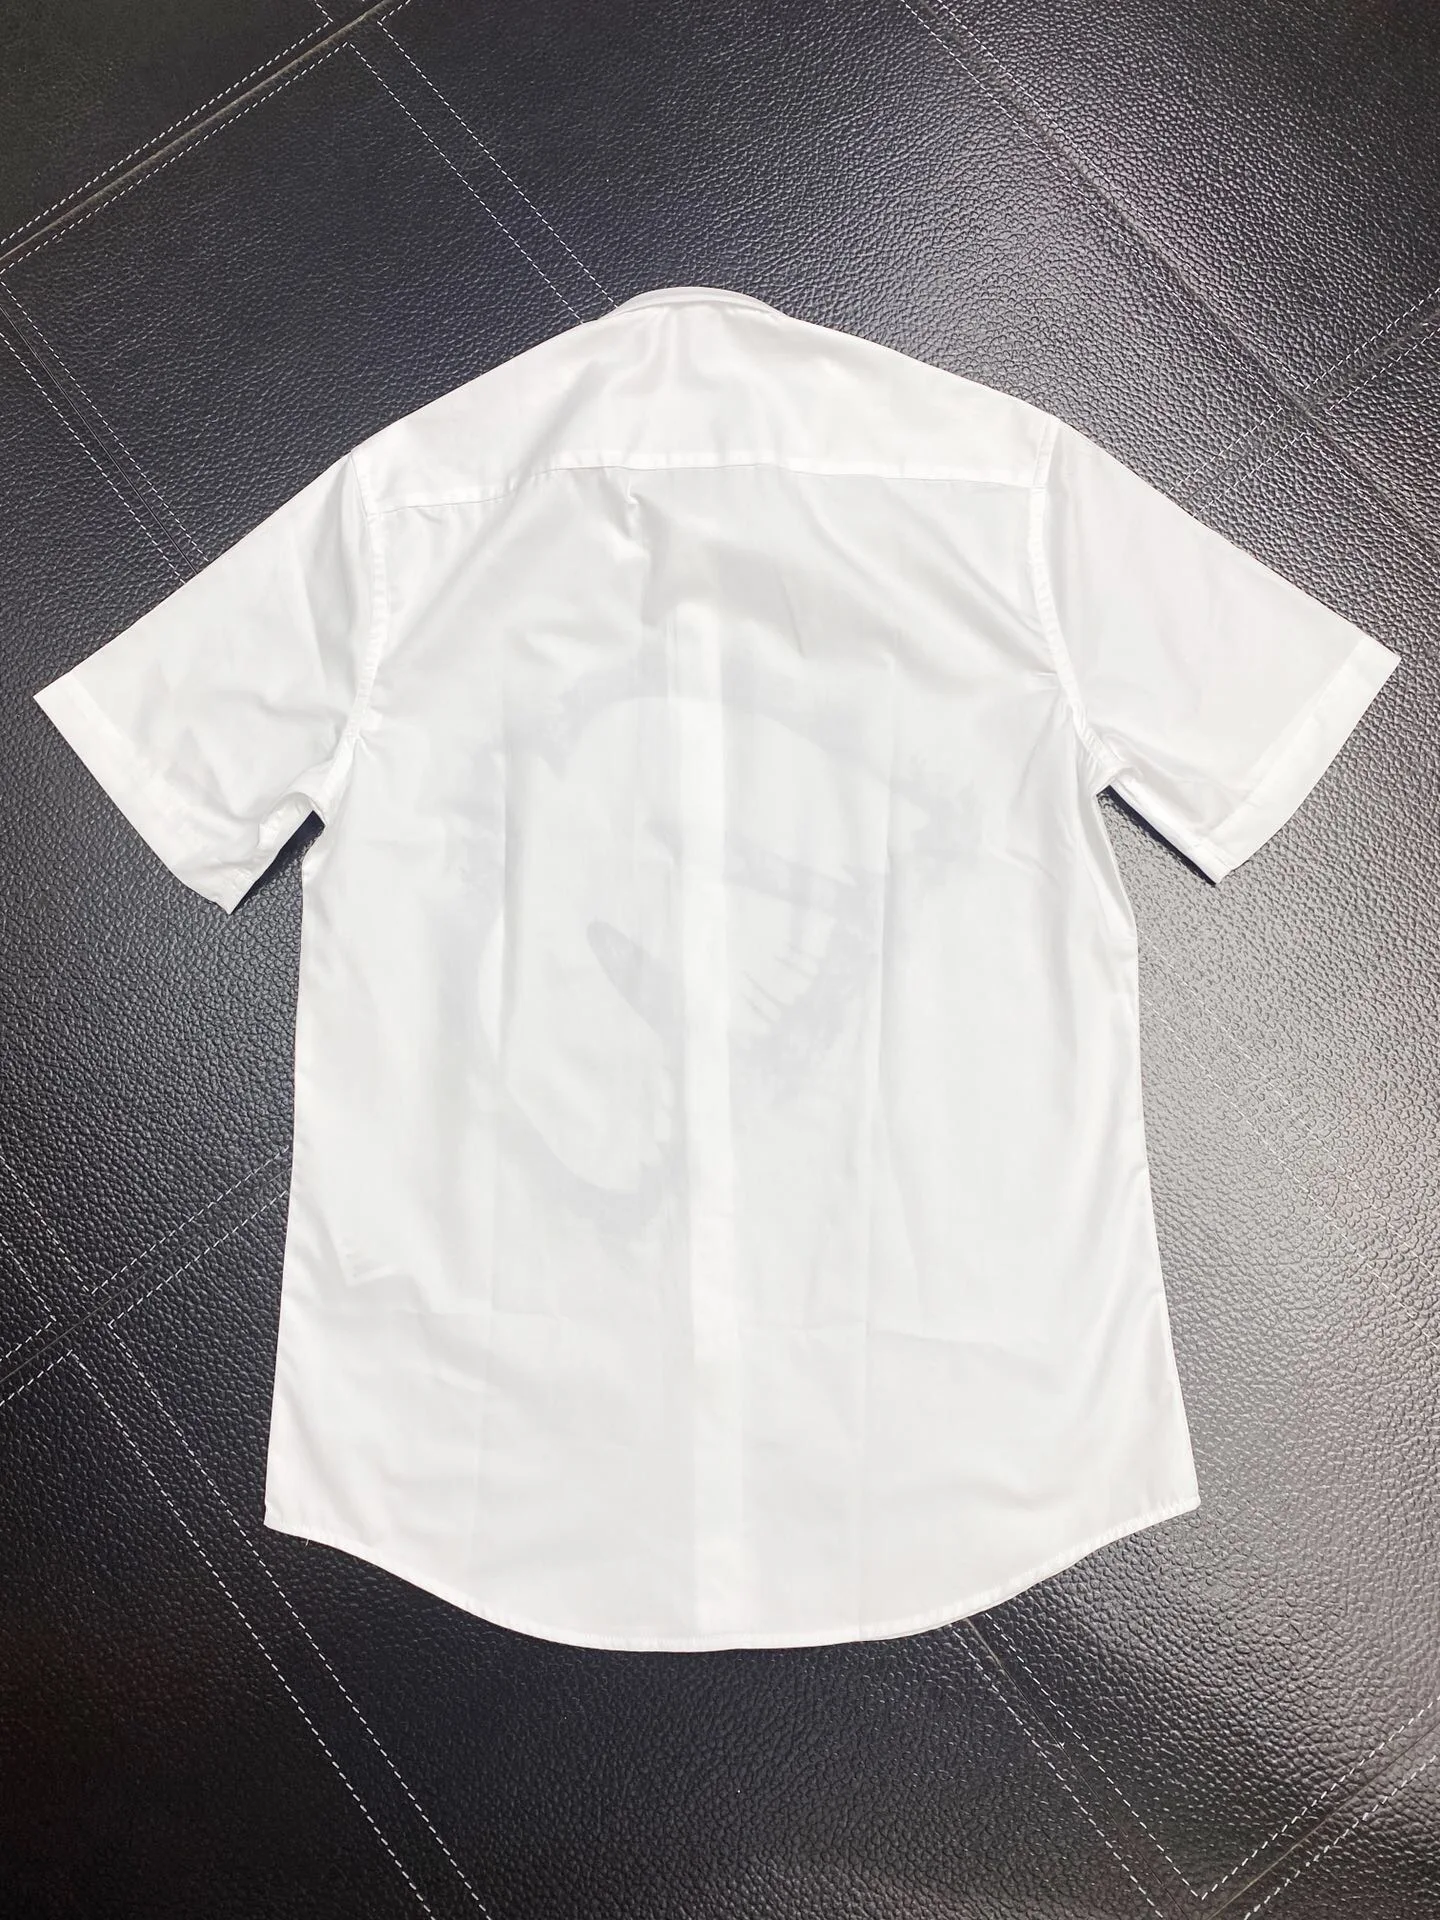 Katoenen Overhemden Voor Heren Schets Zwaluwen Print Korte Mouw Camisas Masculina Casual Slim Fit Heren Business Shirt 101662